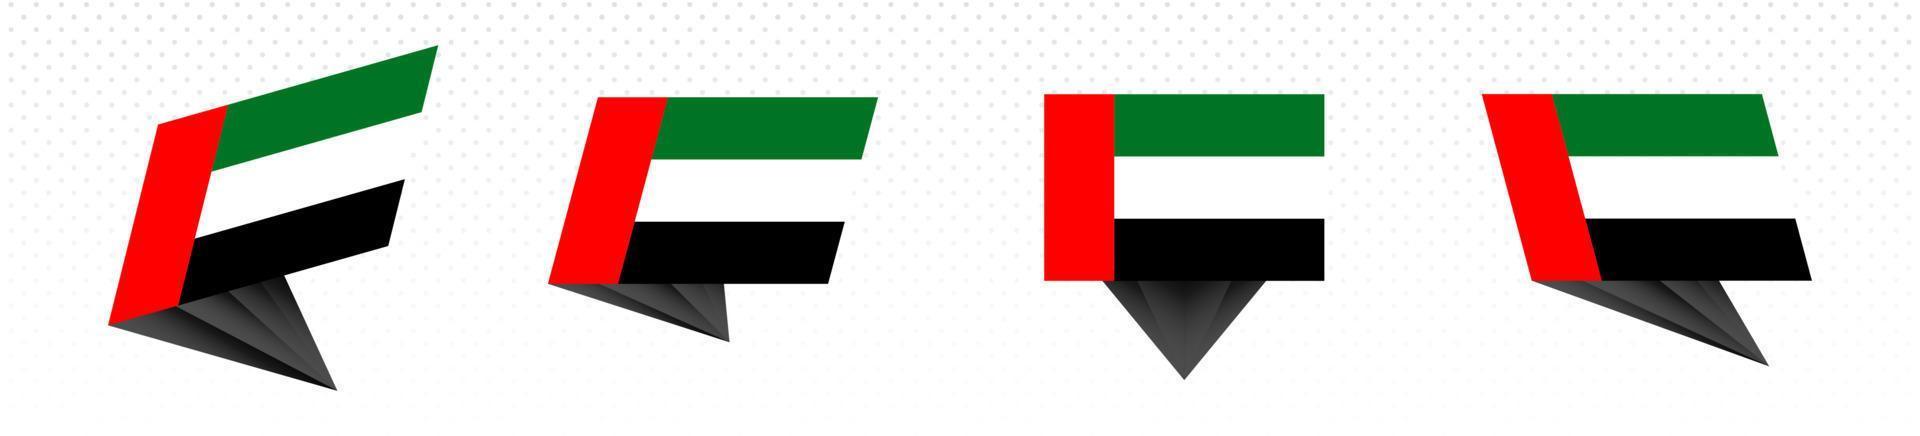 drapeau des émirats arabes unis dans un dessin abstrait moderne, ensemble de drapeaux. vecteur